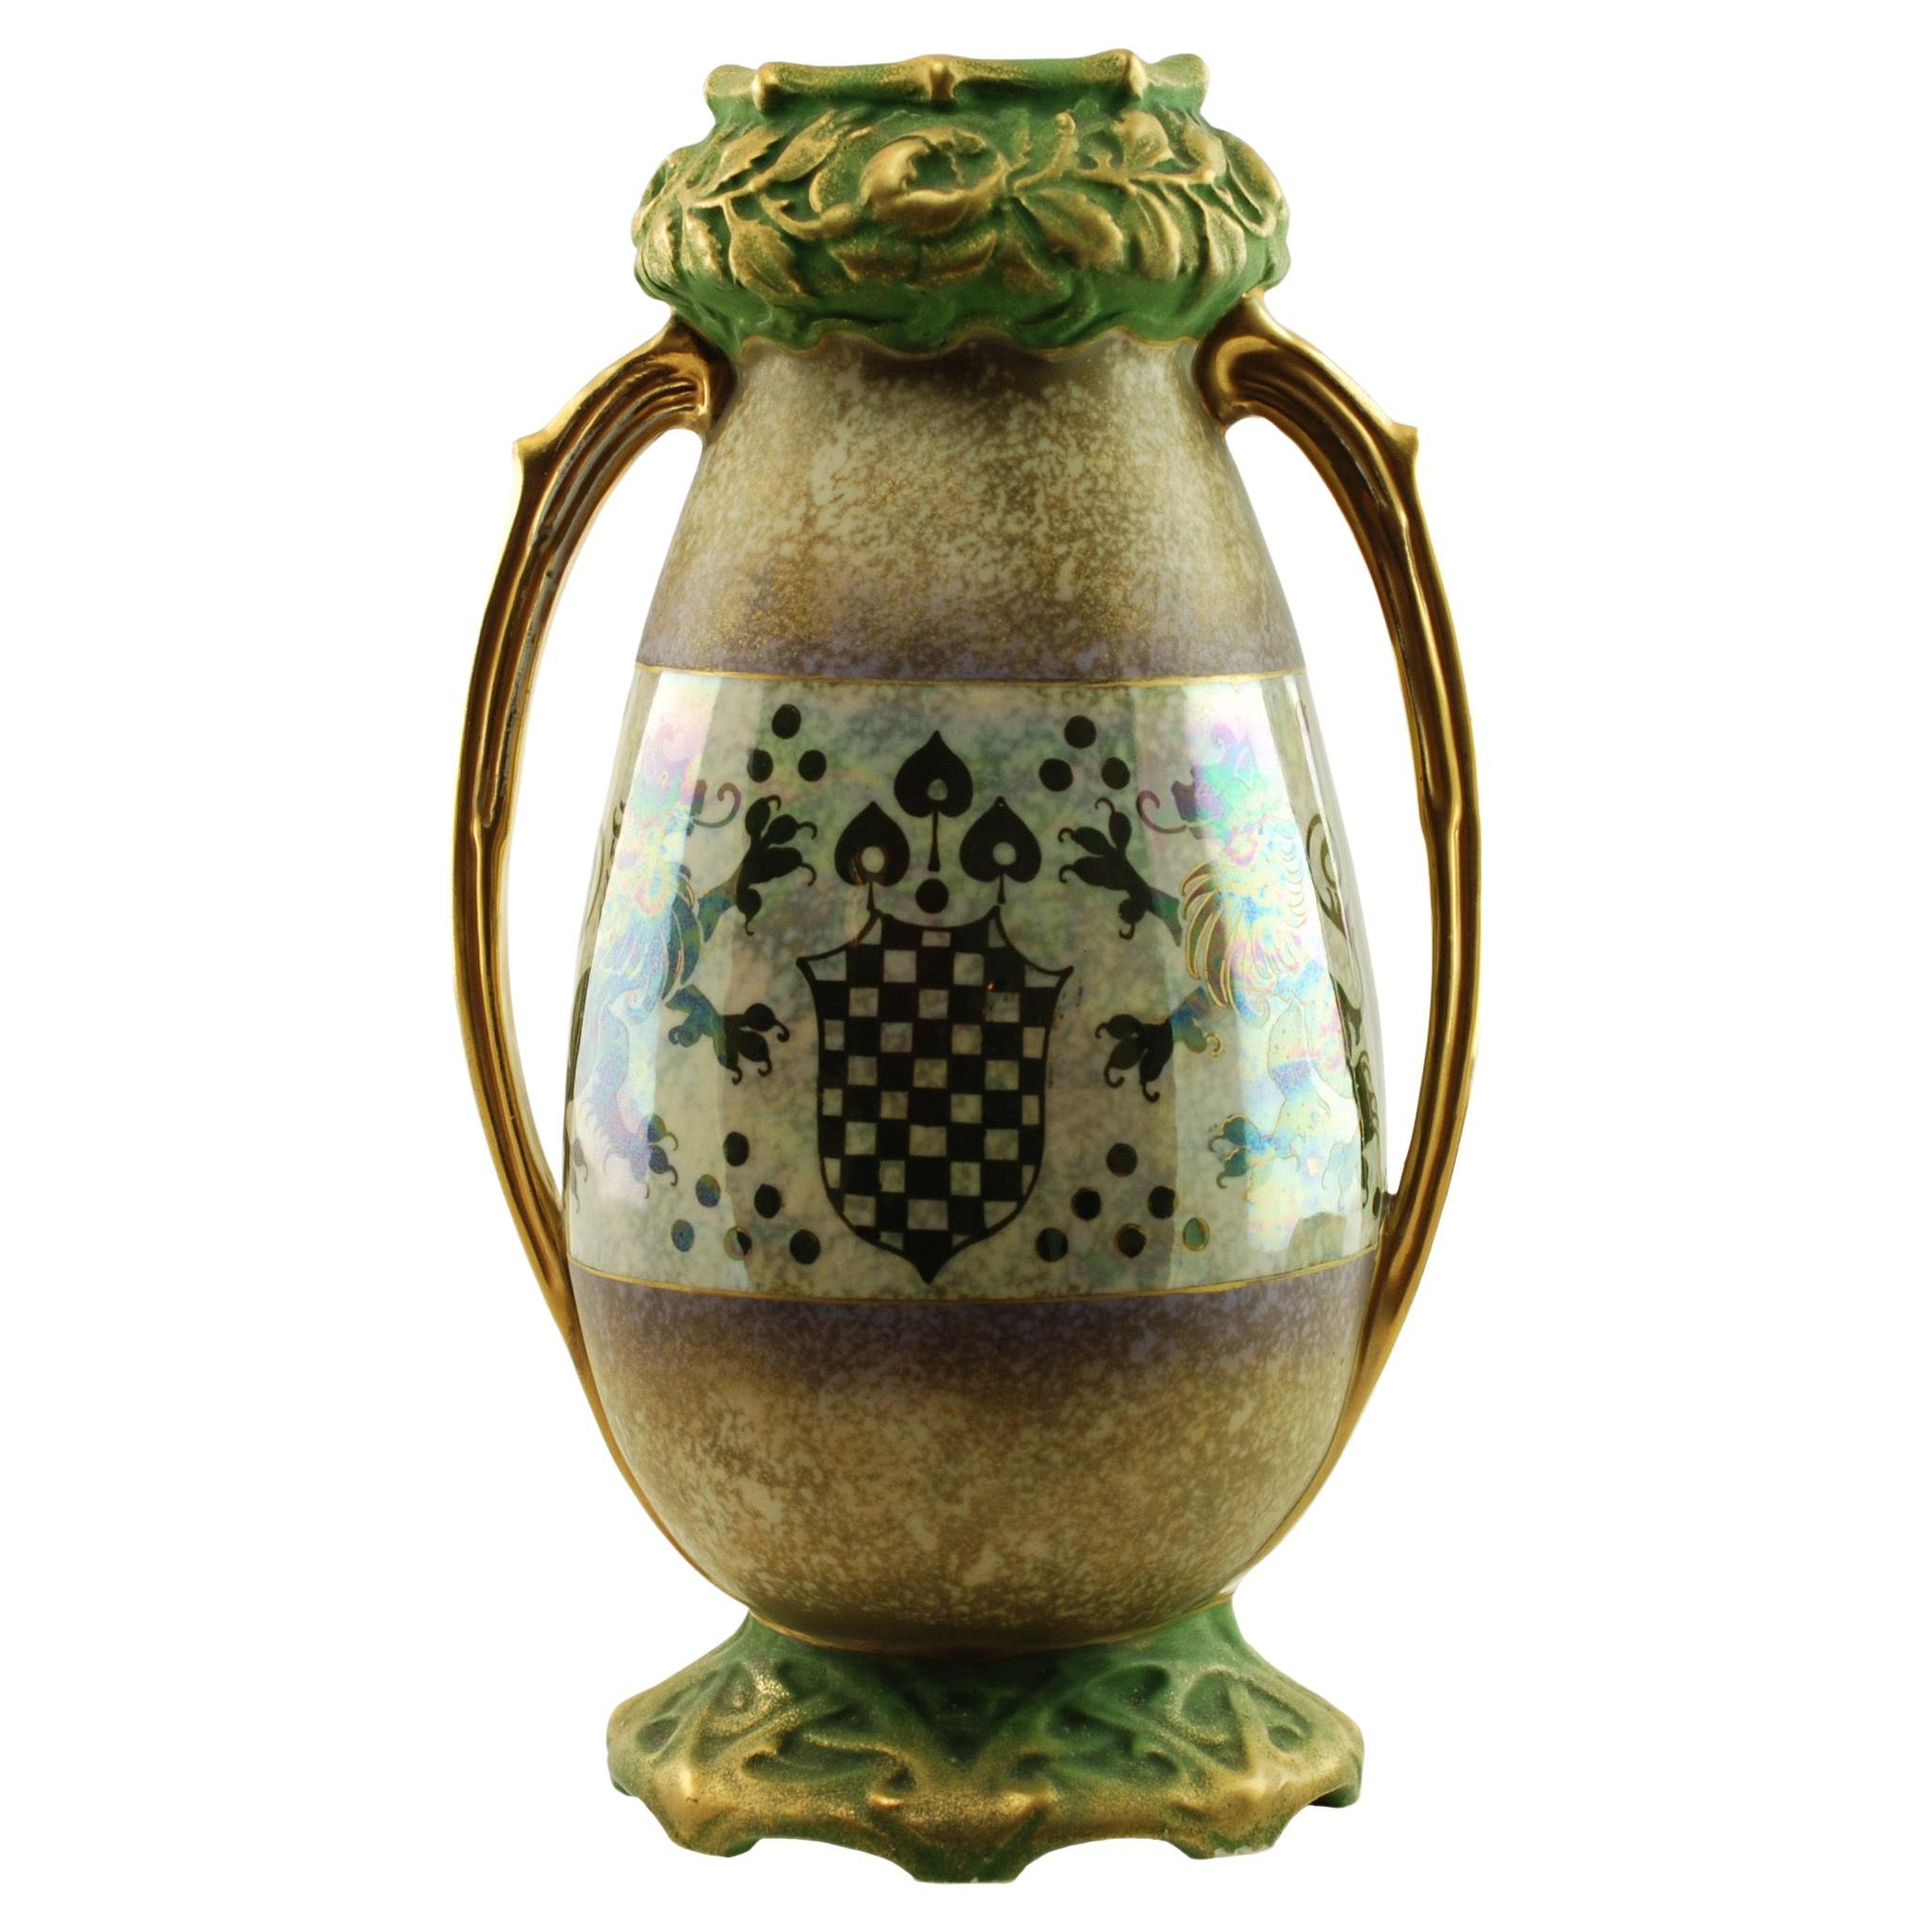 Riessner & Kessel: Amphora Turn Teplitz-Vase mit zwei Henkeln und irisierter Glasur